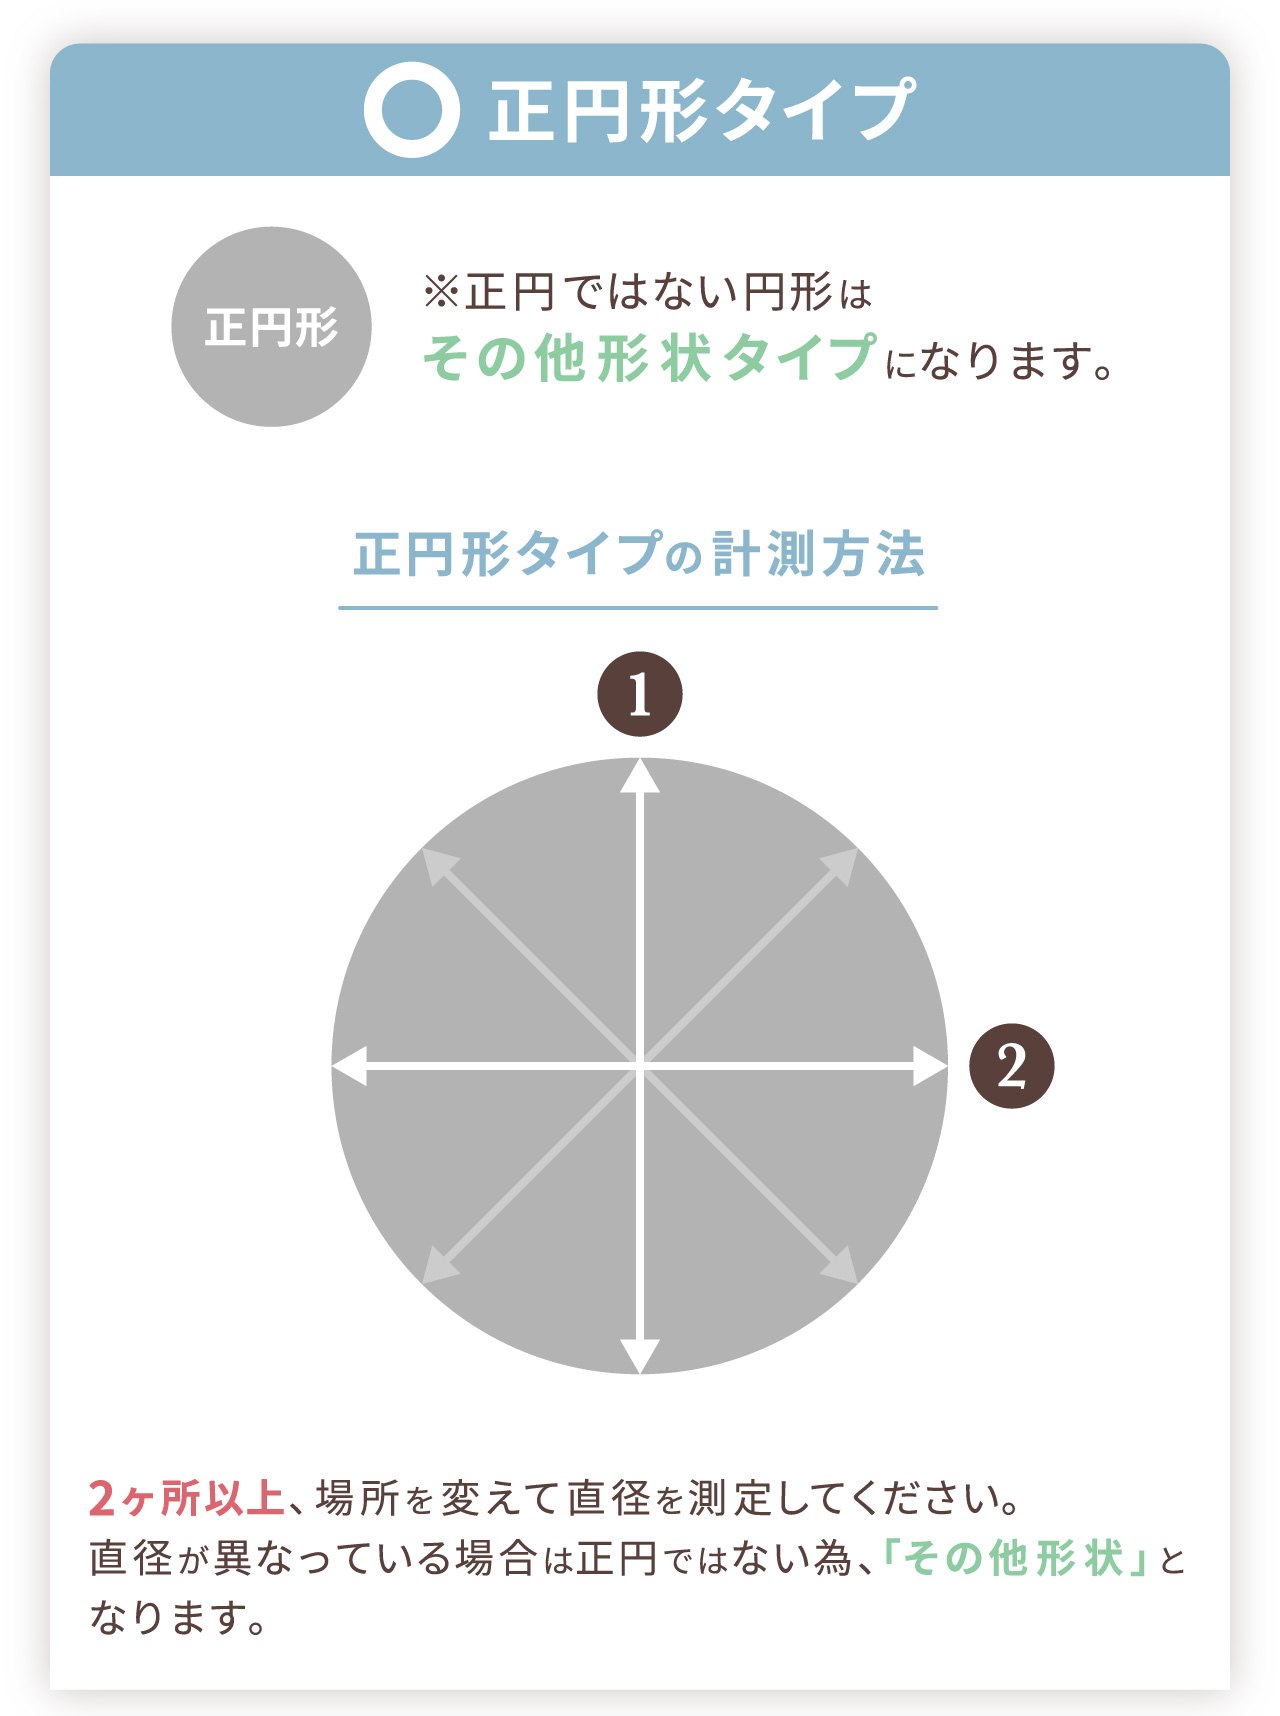 正円形タイプ　正円形※正円ではない円形は「その他形状」タイプになります。正円形タイプの測定方法　2か所以上、場所を変えて直径を測定して下さい。直径が異なっている場合は正円ではない為、「その他形状」となります。